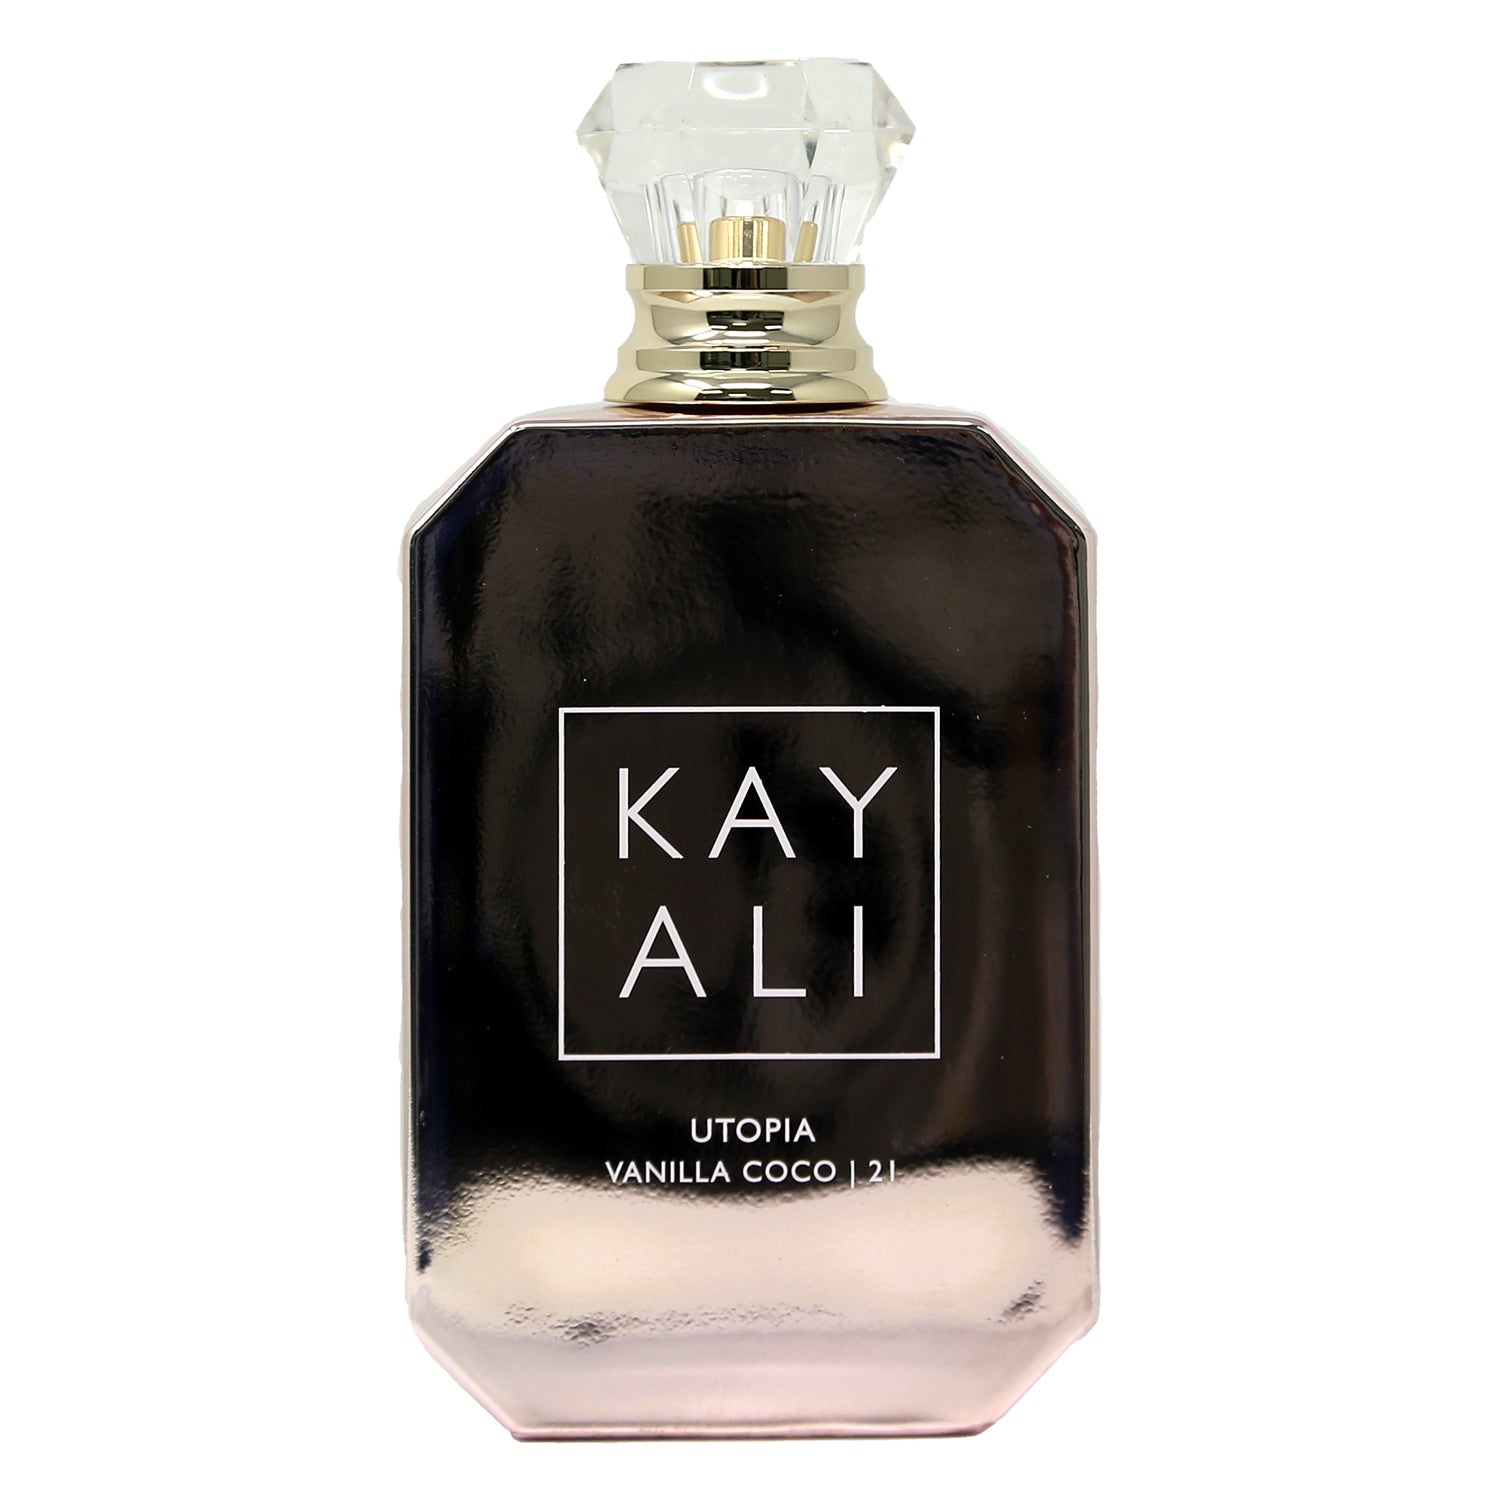 Utopia Vanilla Coco  21 by Kayali » Reviews & Perfume Facts